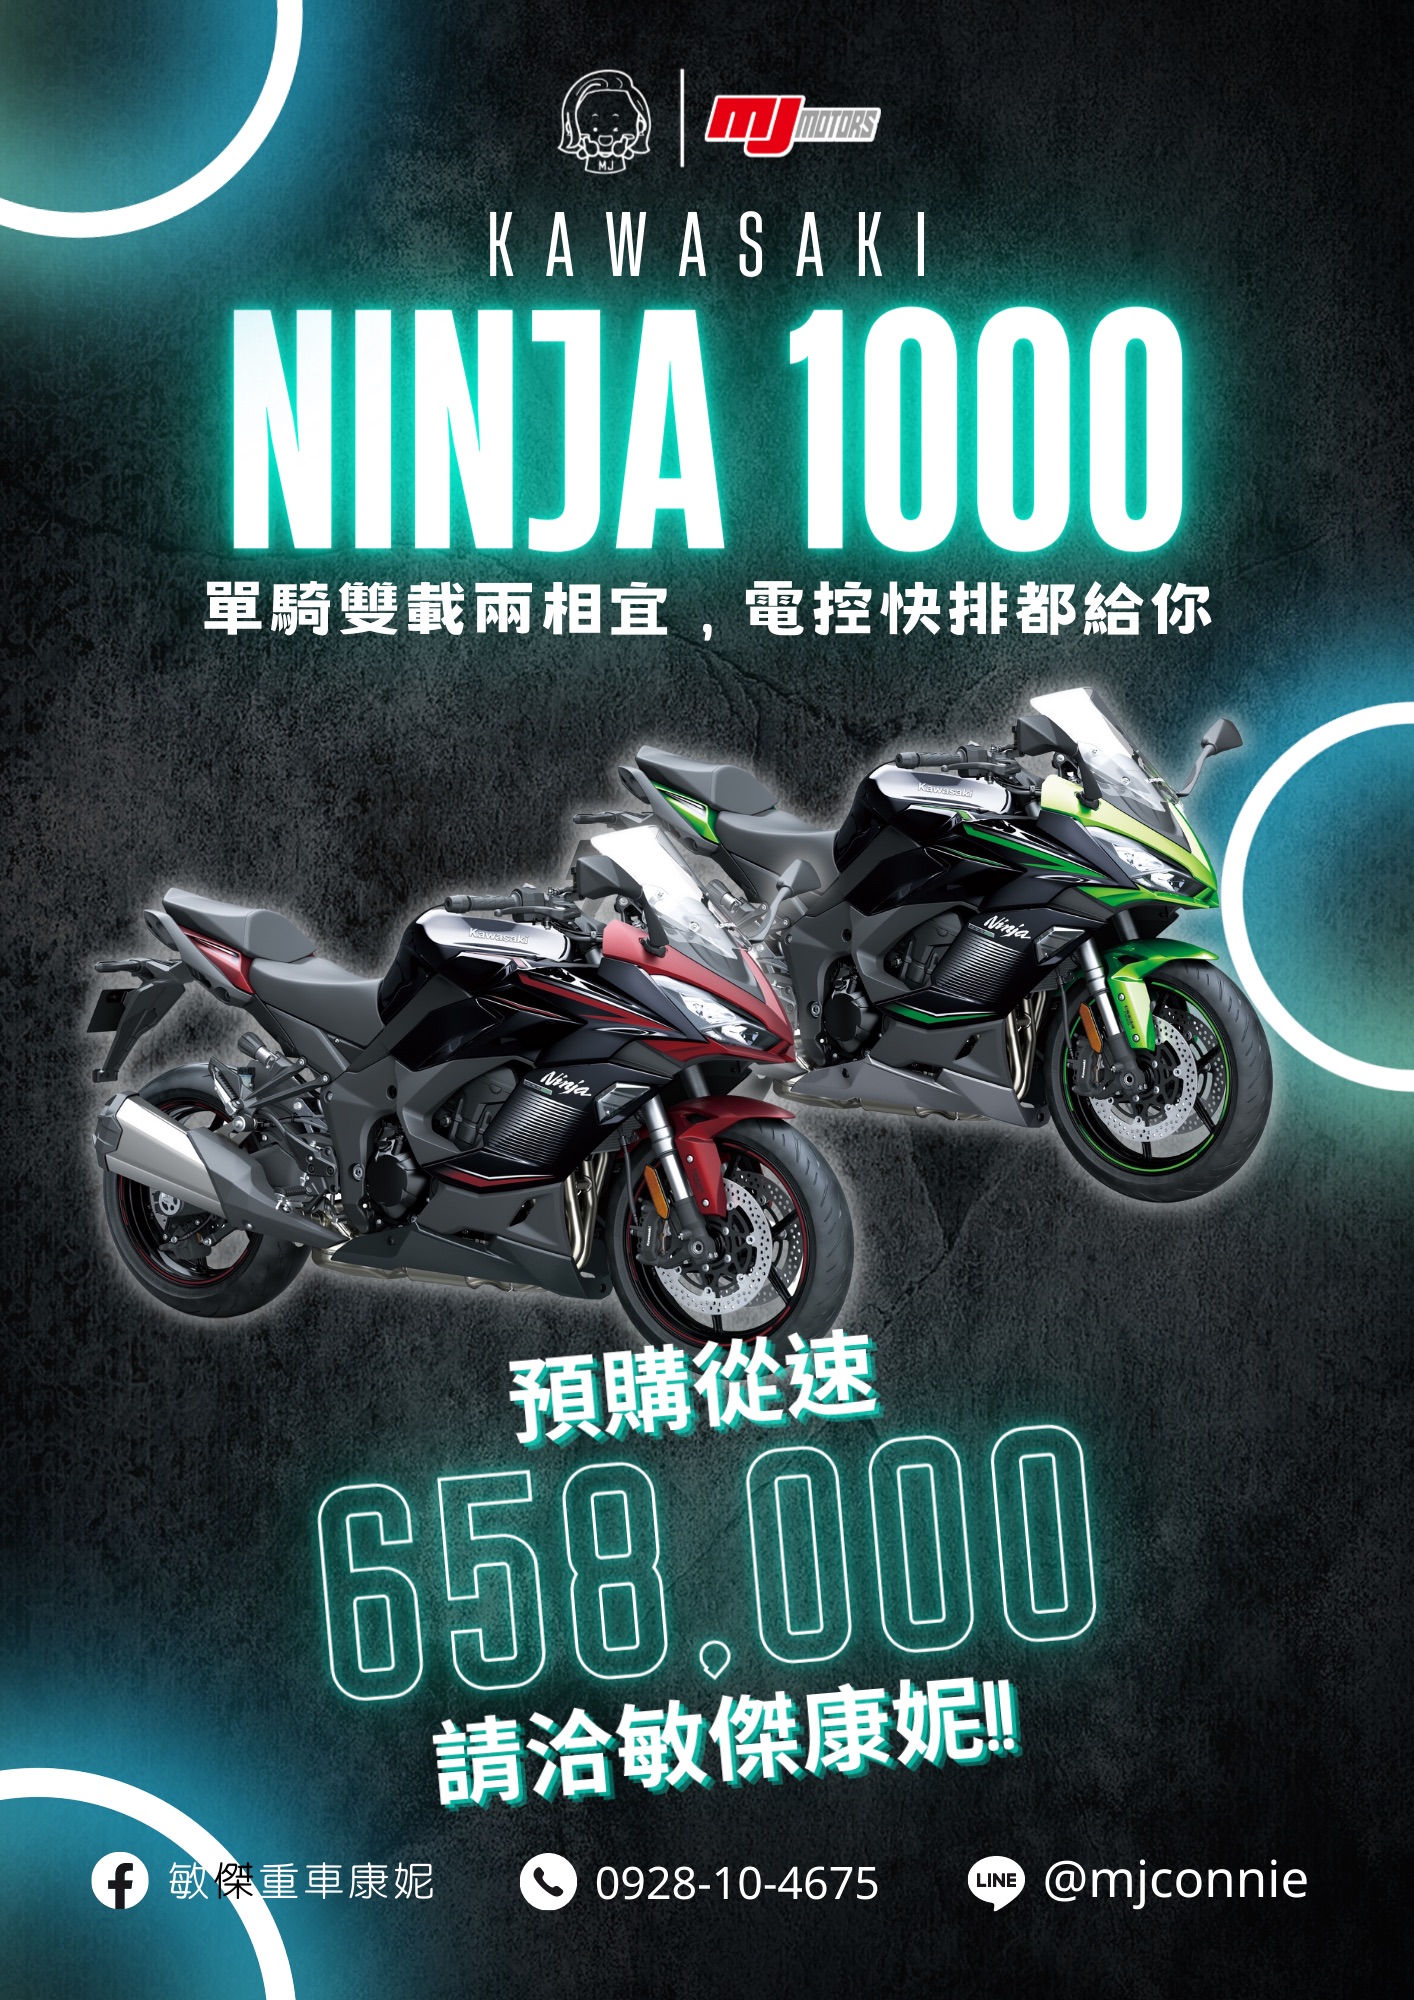 KAWASAKI NINJA1000新車出售中 『敏傑康妮』川崎 Kawasaki Ninja1000 Z100SX 開始接受預購排序!!  | 敏傑車業資深銷售專員 康妮 Connie